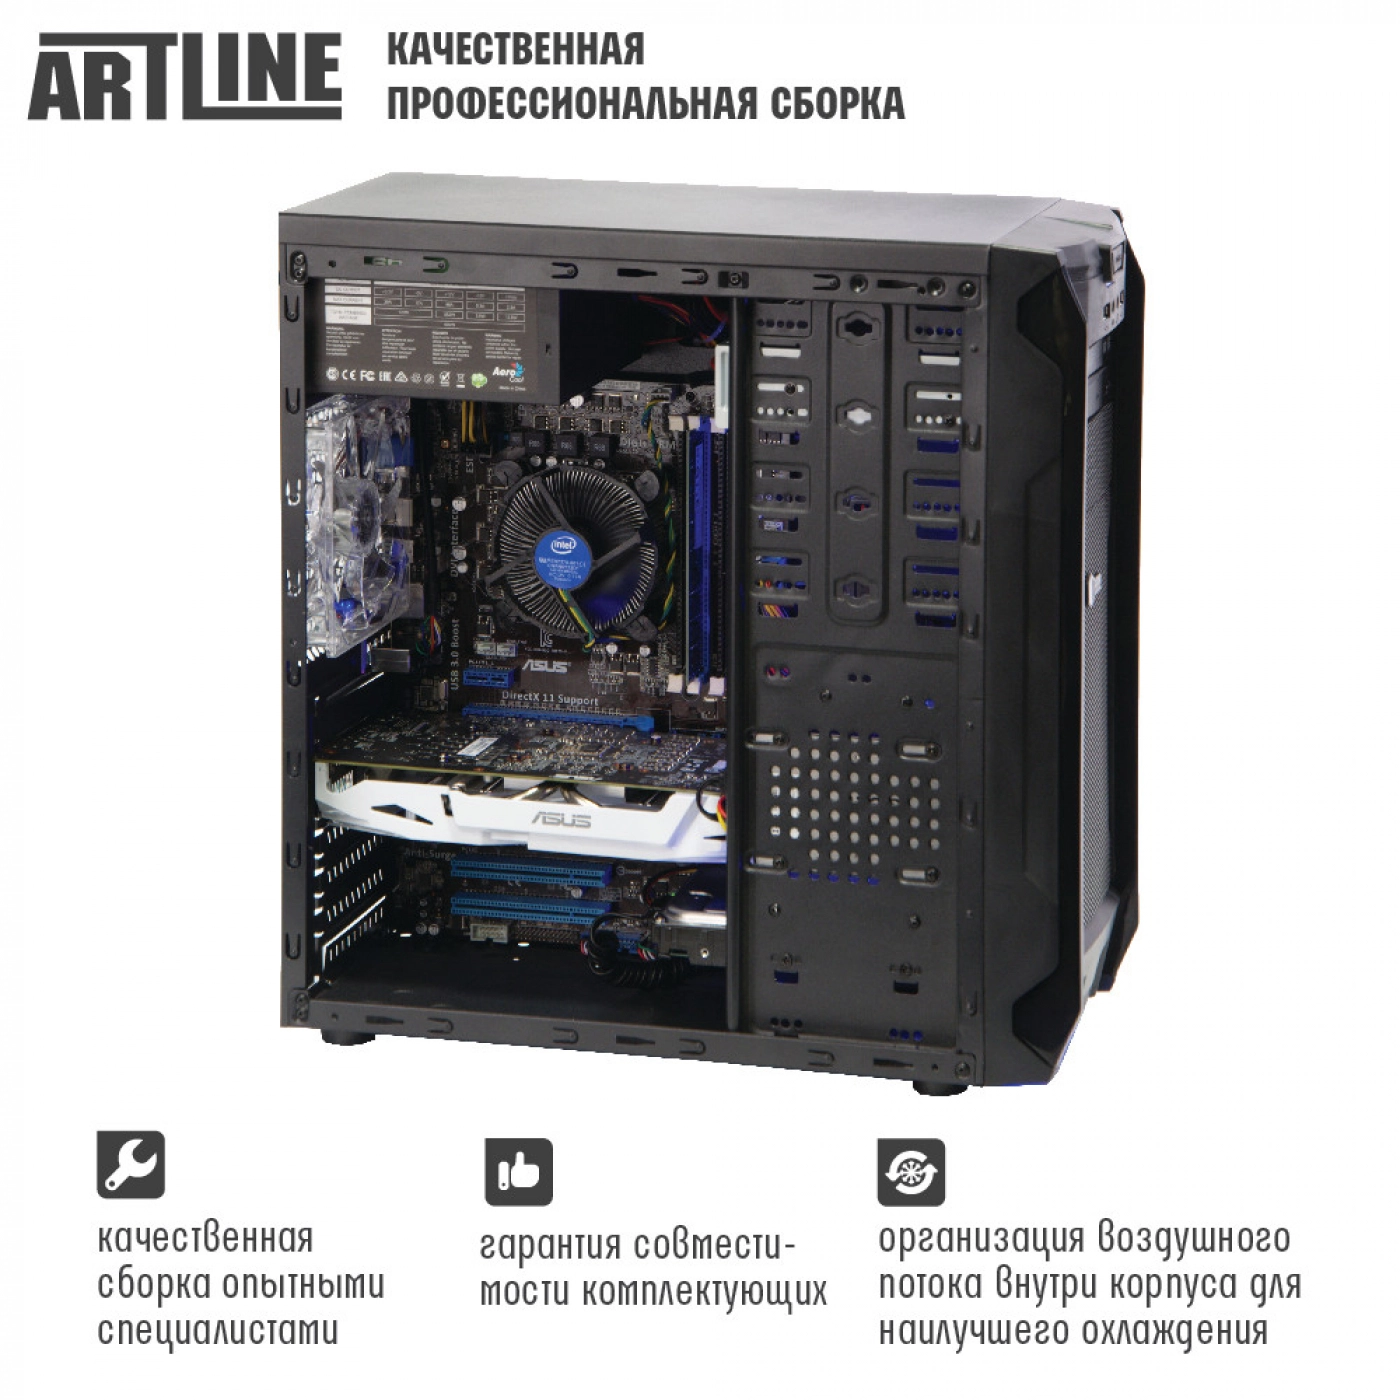 Купить Компьютер ARTLINE Business H42v01 - фото 5